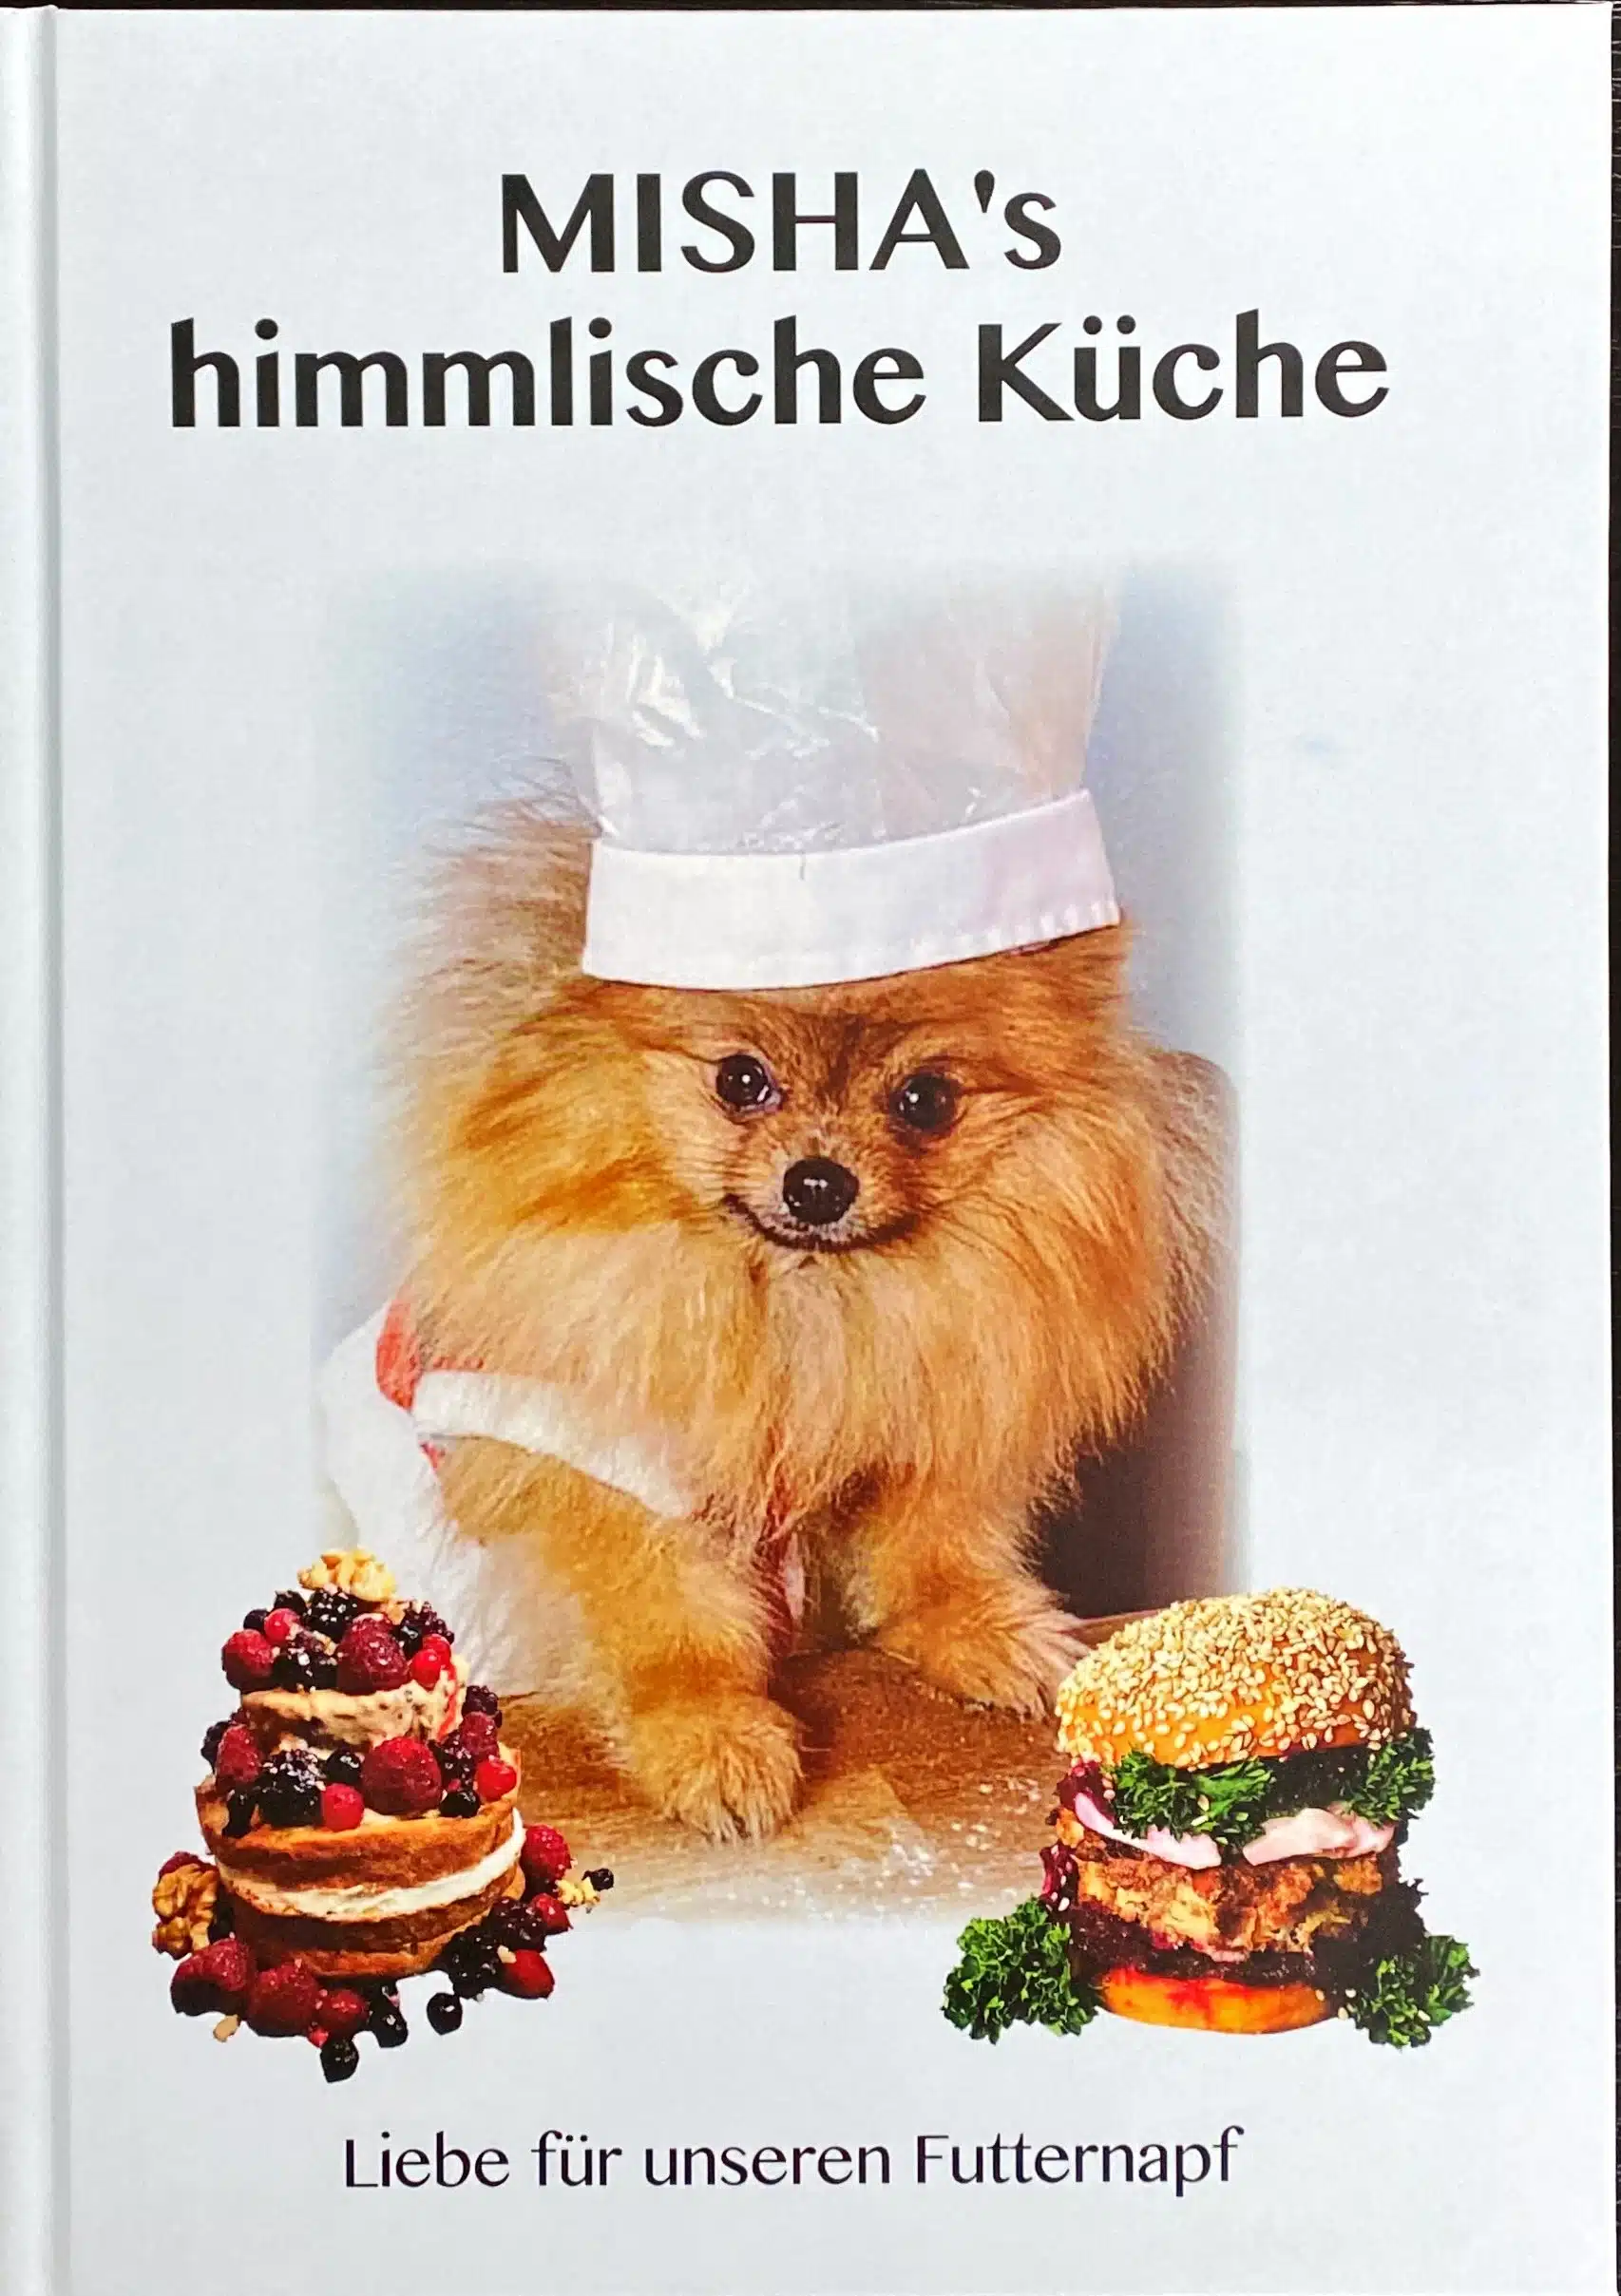 misha's himmlische küche hundekochbuch enthält tolle Rezepte für ihren geliebten vierbeiner